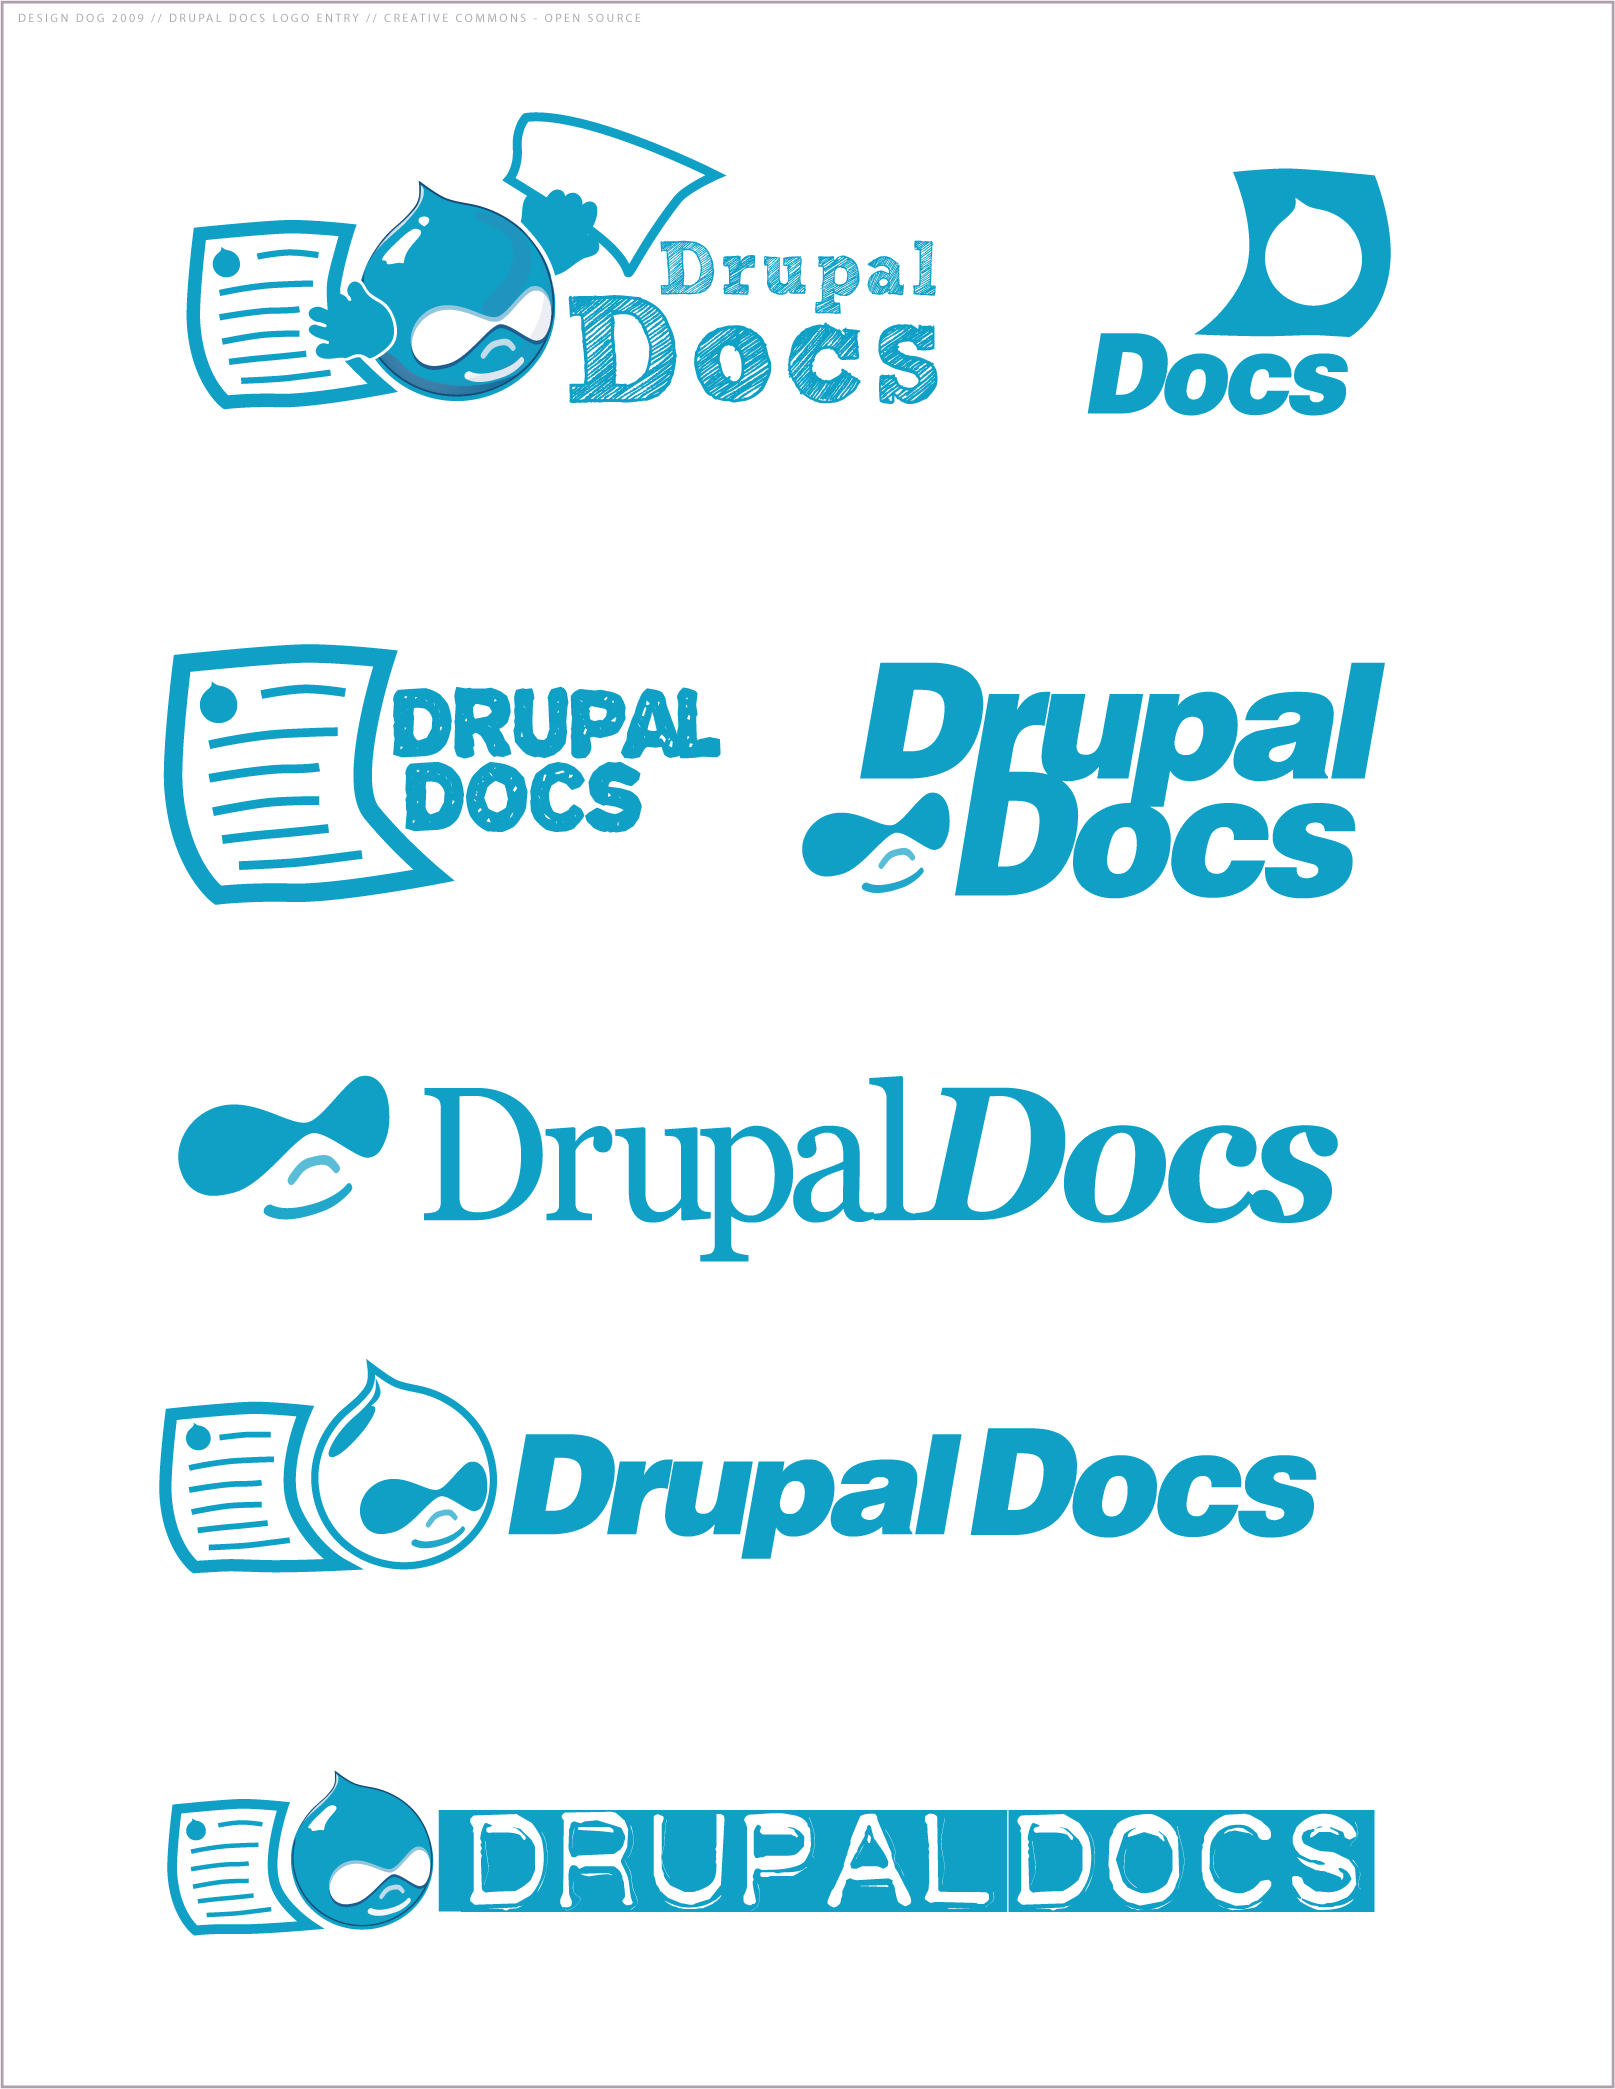 drupal logo vector